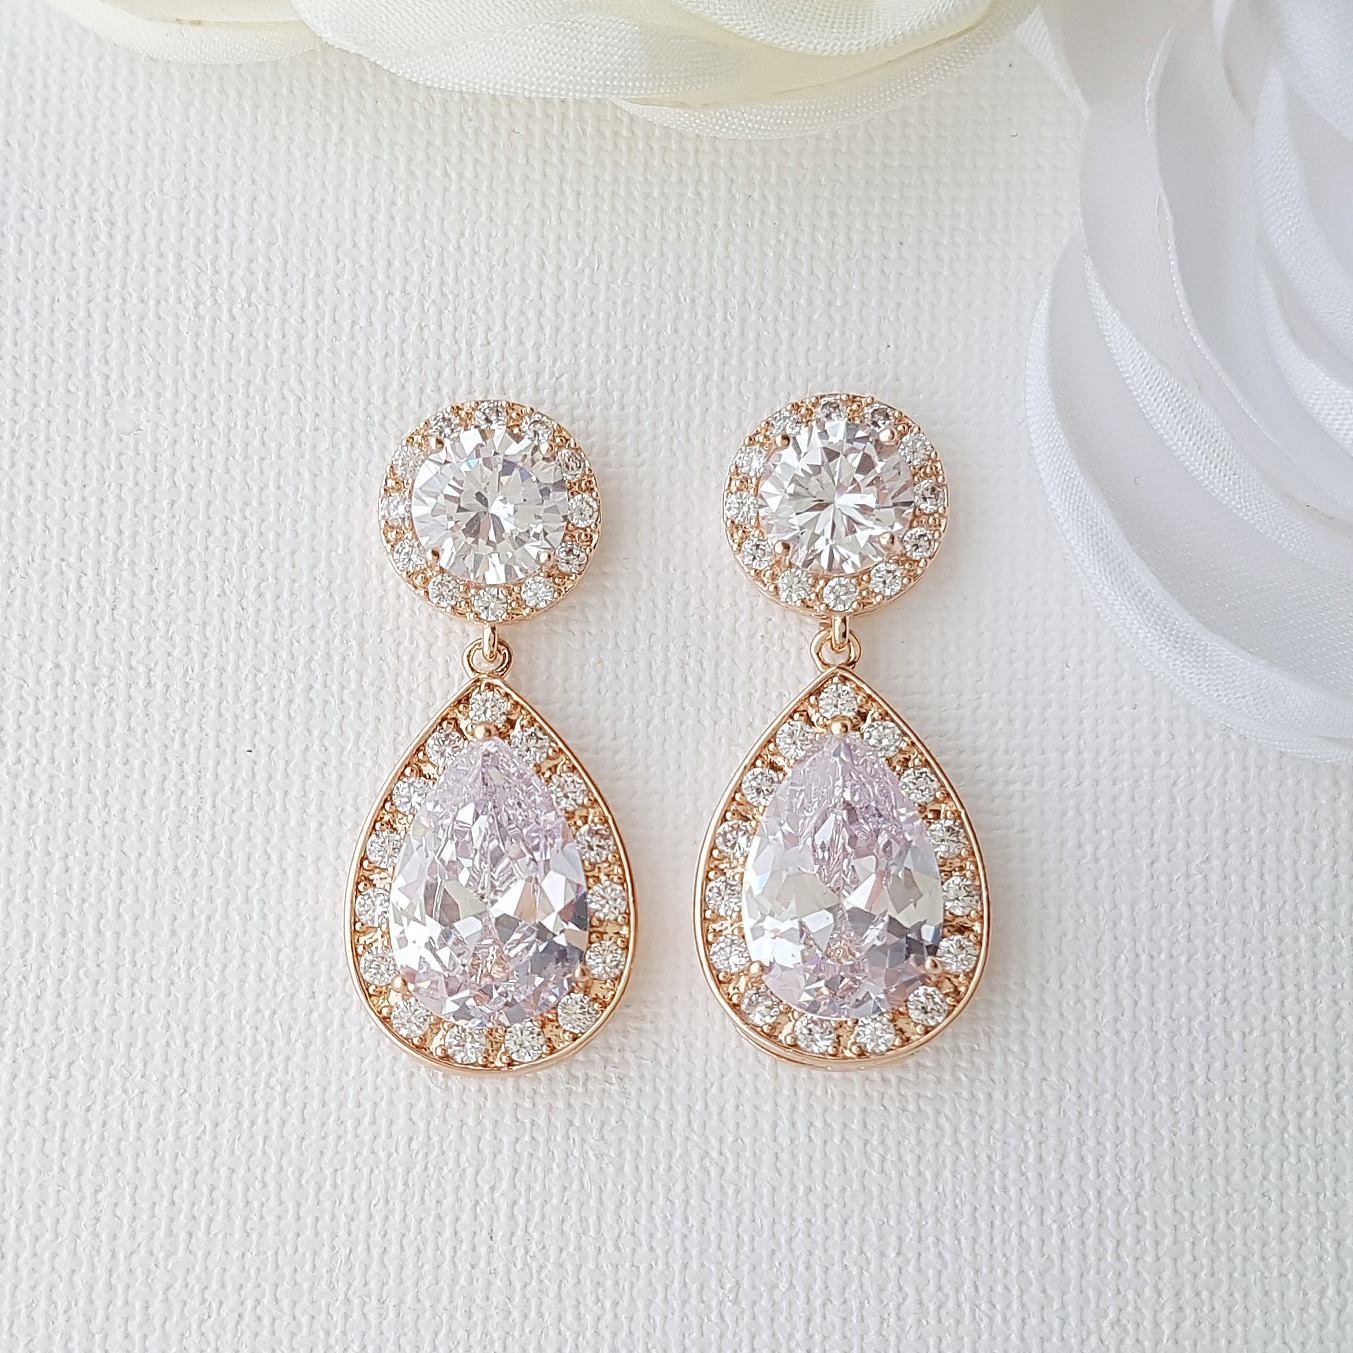 Rose gold wedding Earrings in Teardrop Cubic Zirconia